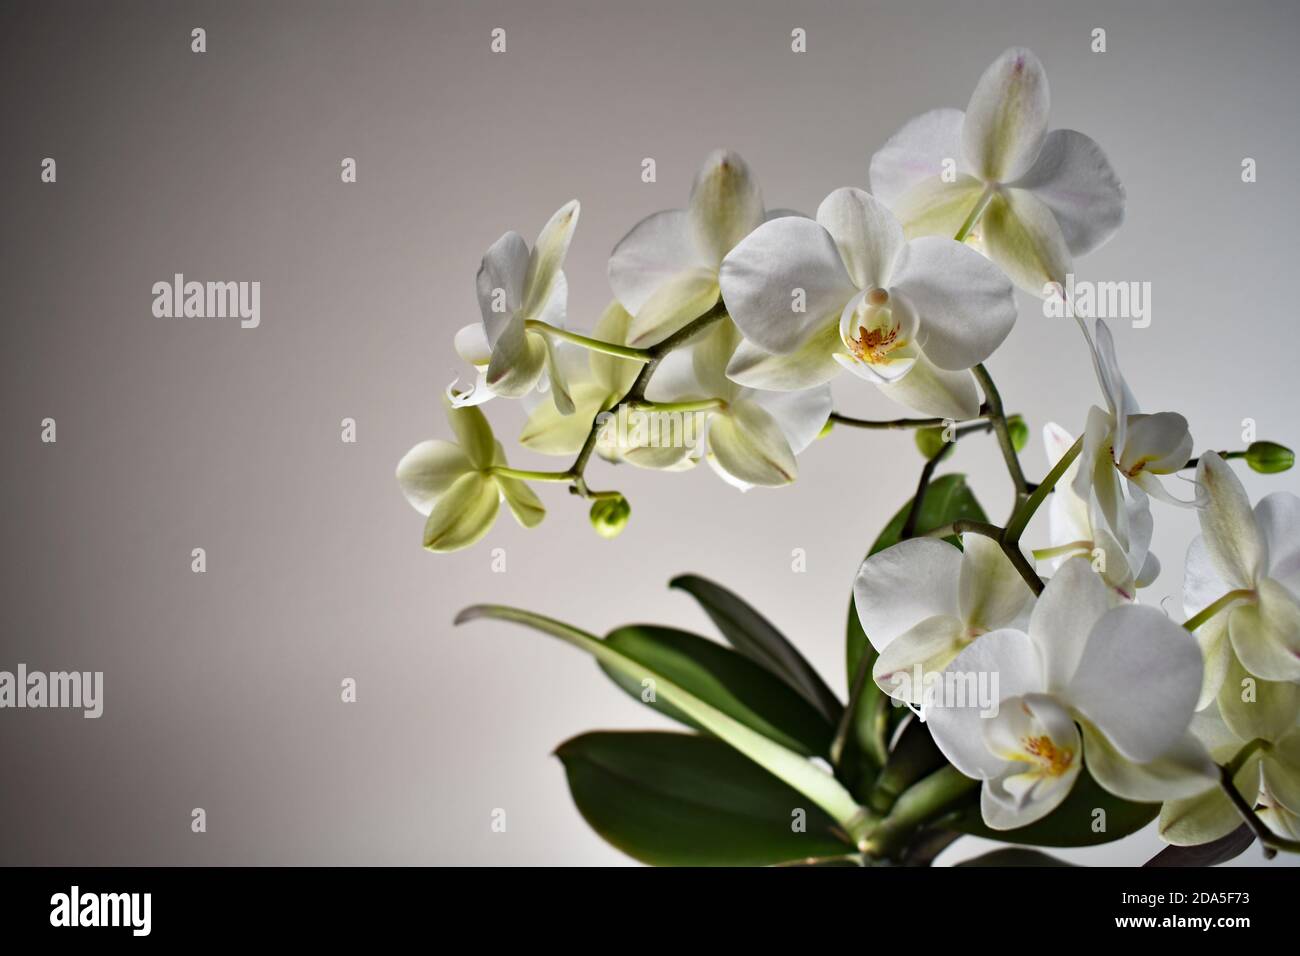 Eine weiße Orchidee (Phalaenopsis) in der Blüte. Der Blütenstiel und die grünen Blätter vor einem schlichten, hellen Hintergrund. Leerzeichen und leere Bereiche kopieren. Stockfoto